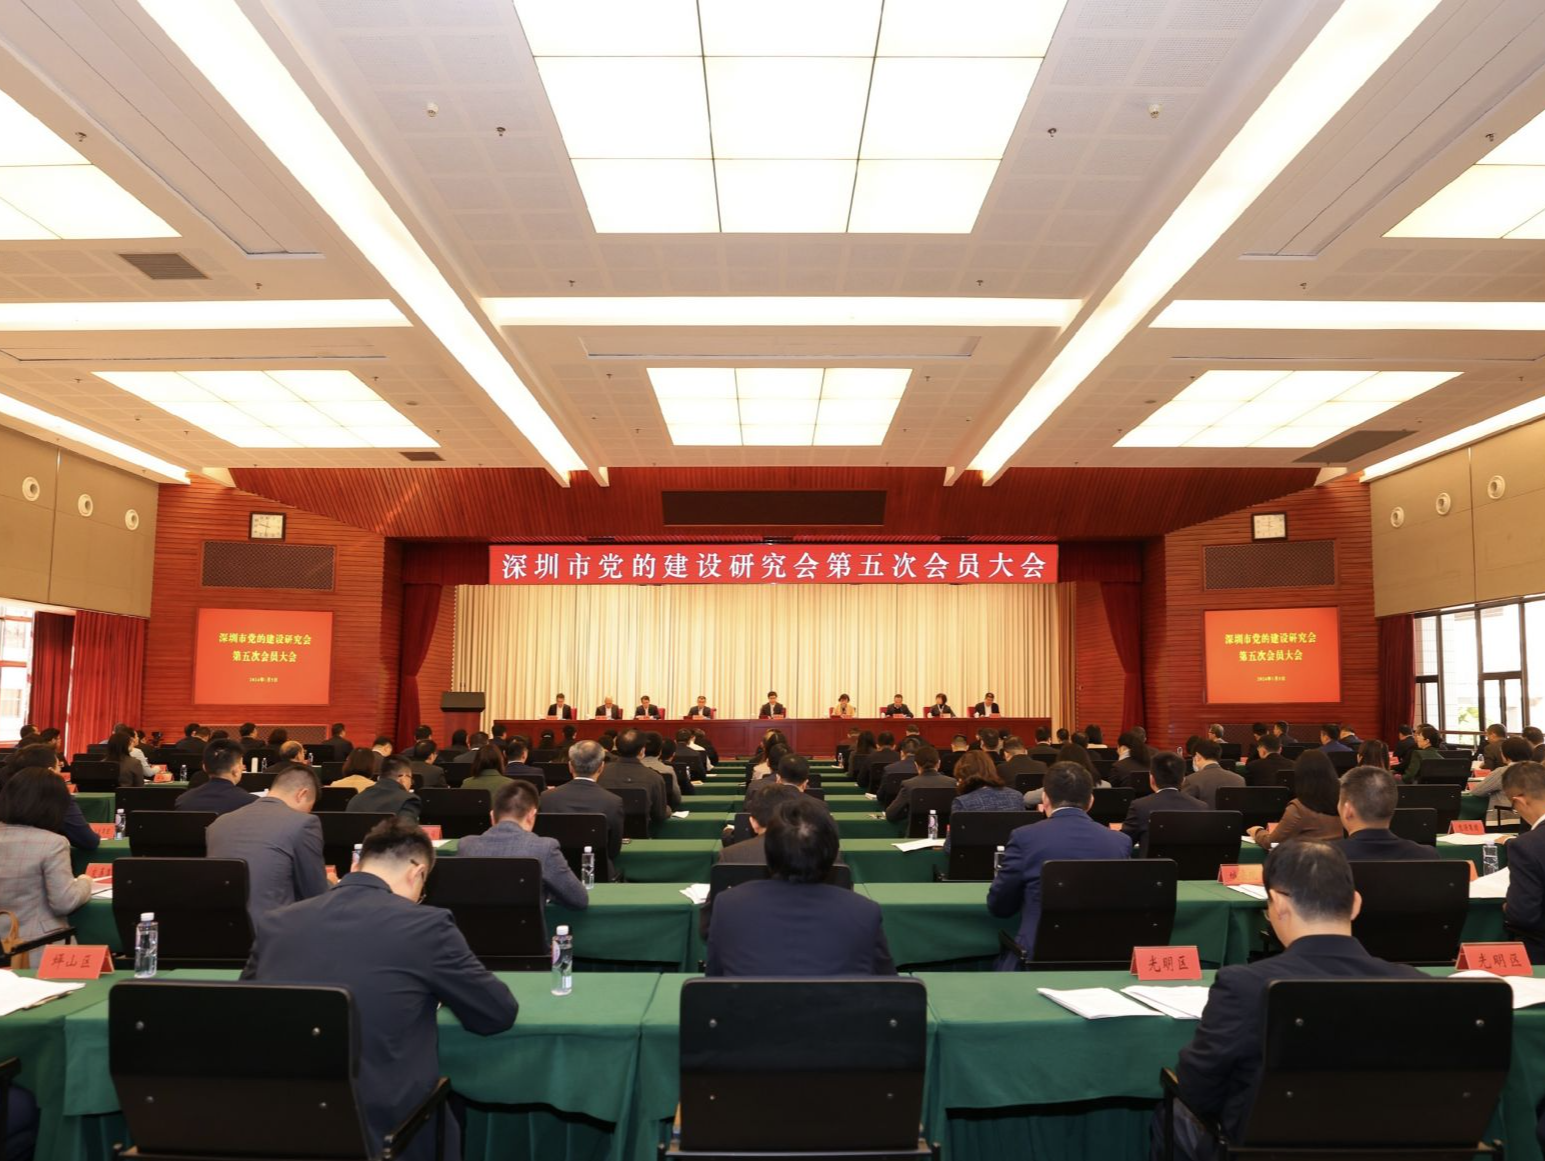 深圳市党的建设研究会第五次会员大会召开 ，不断提高党建研究水平